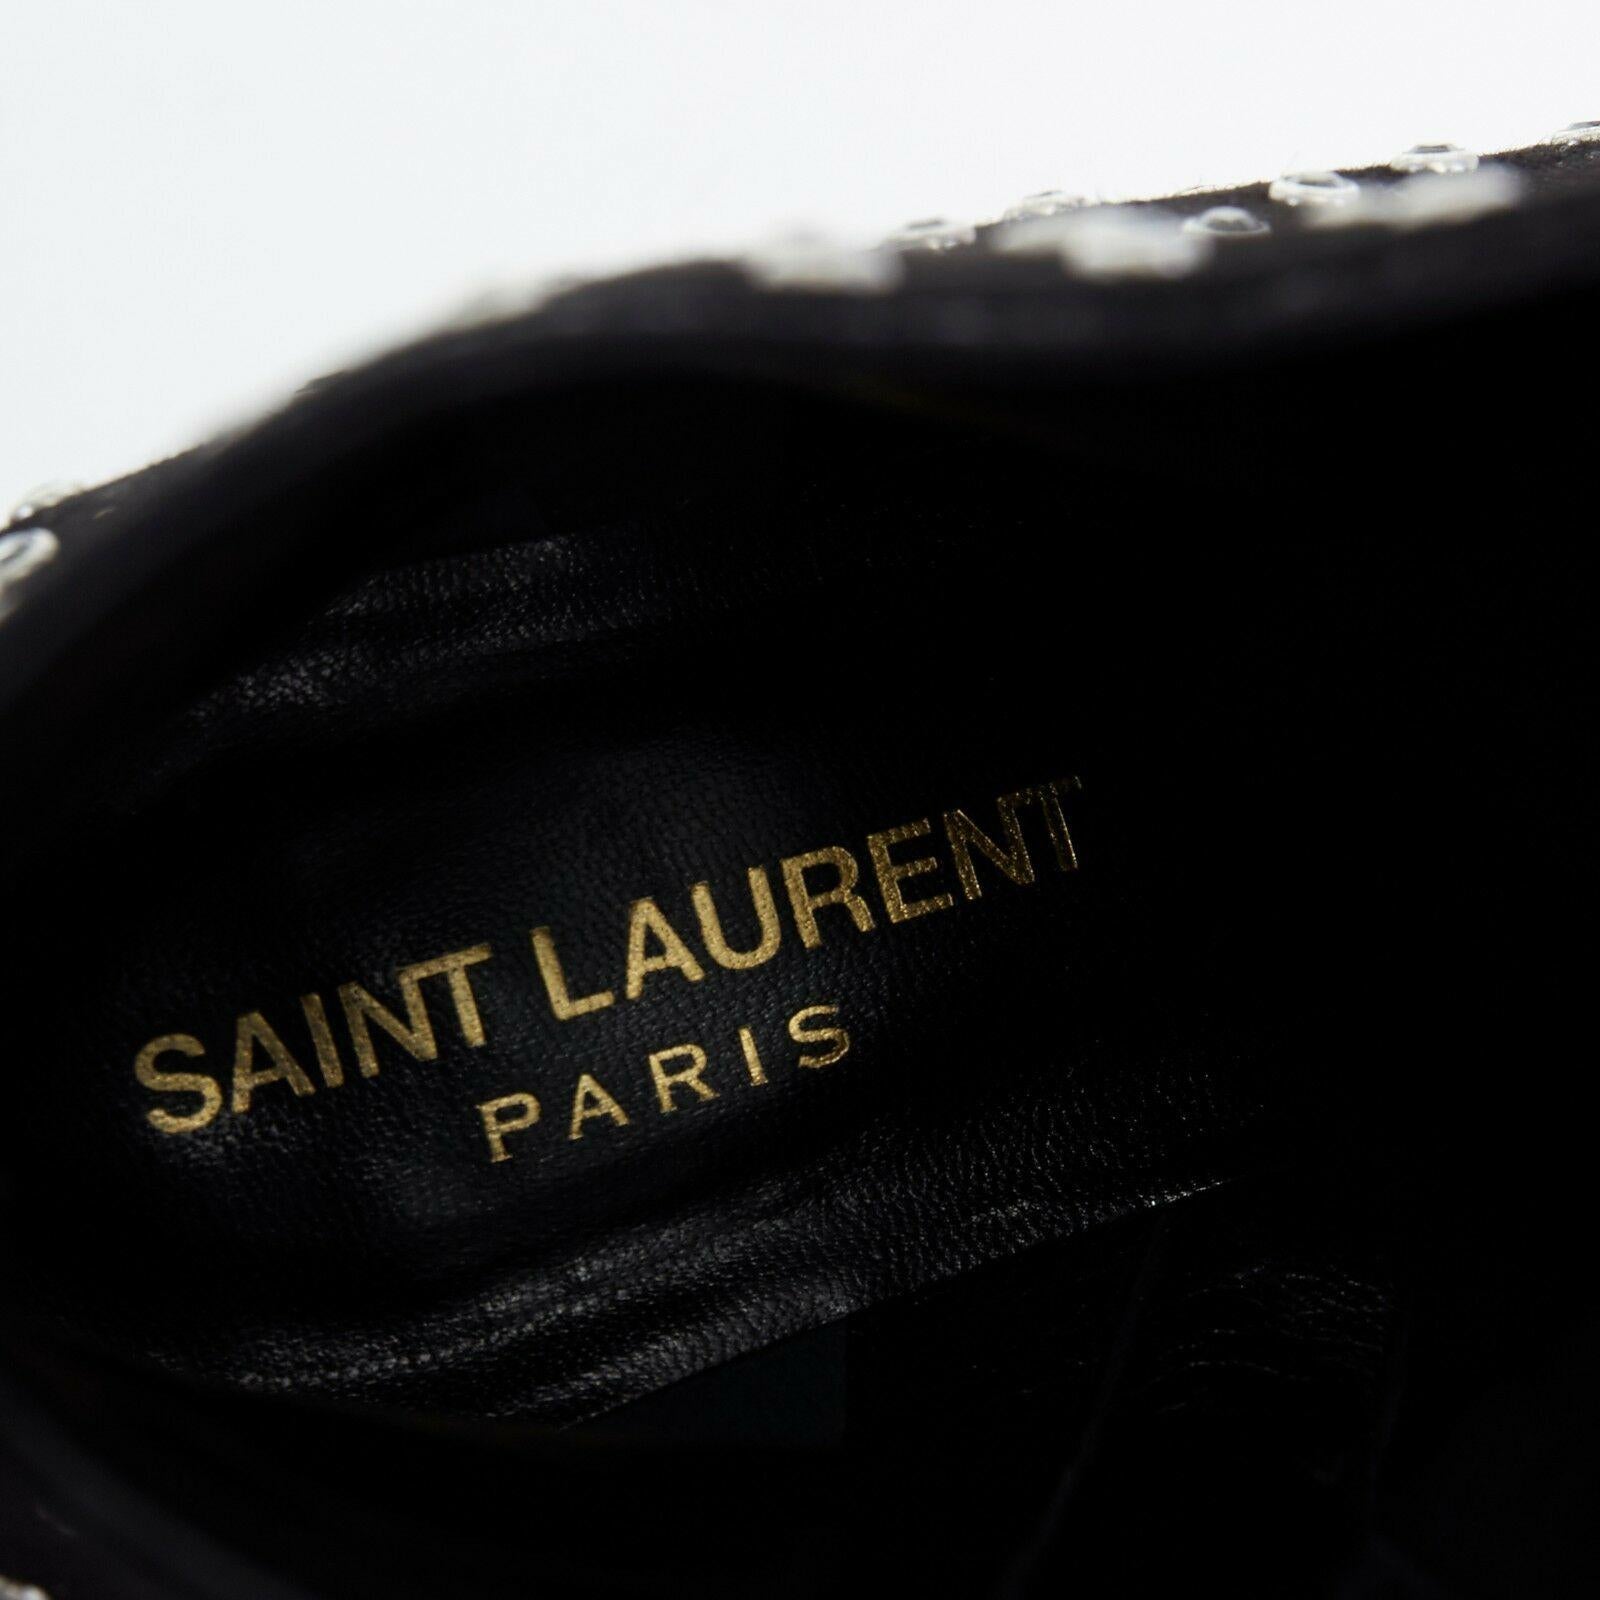 SAINT LAURENT PARIS black suede strass crystal embellished ankle boot shoe EU35 For Sale 6